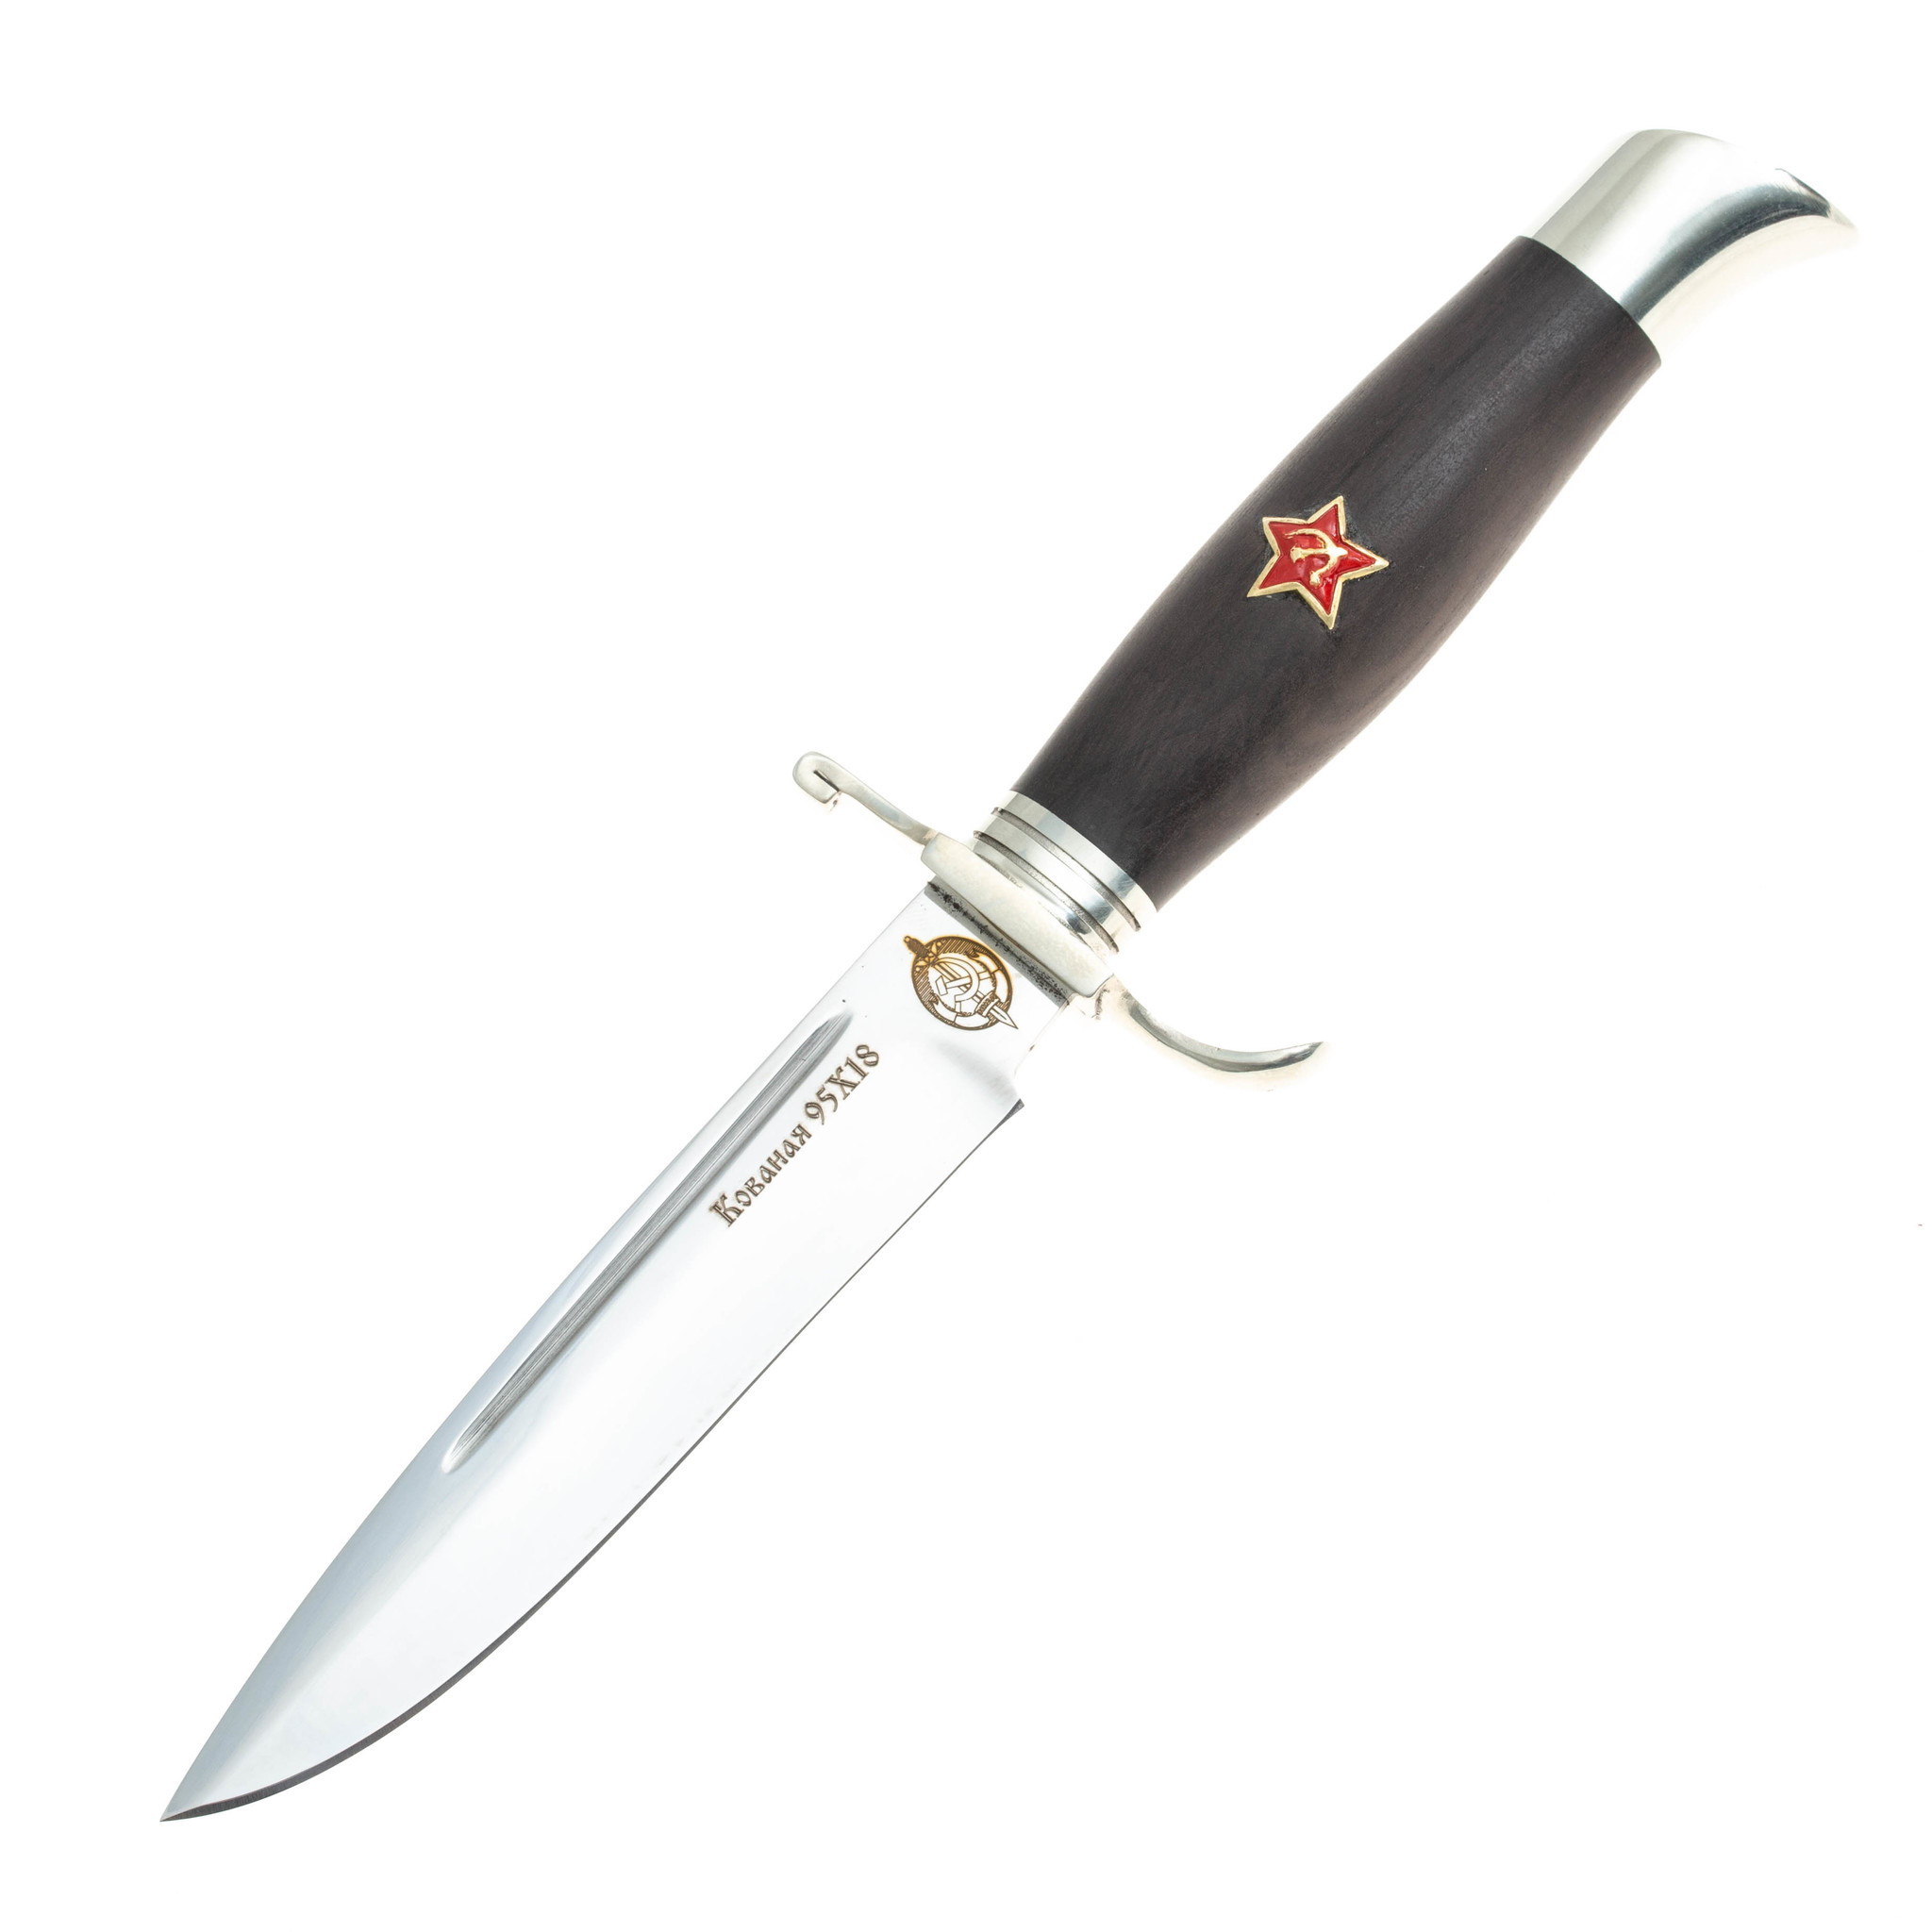 Нож Финка НКВД Звезда, сталь 95х18, граб нож туристический аир засапожный 2 сталь 95х18 рукоять кожа